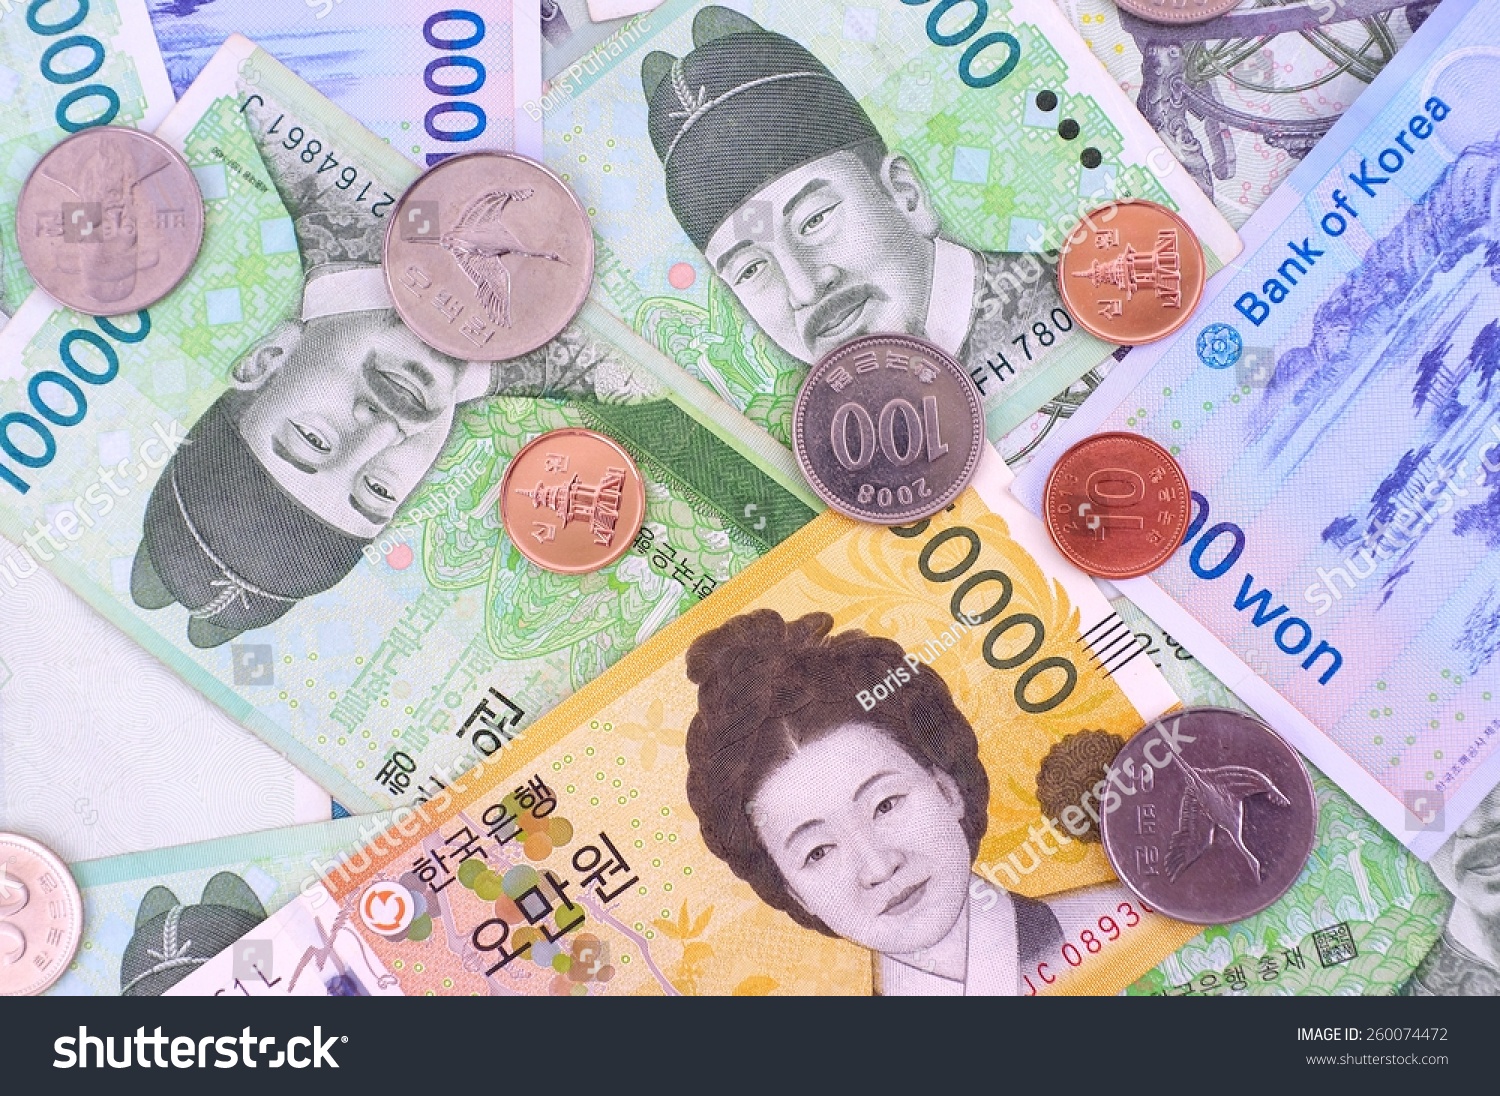 Валюта доллар вон. Денежная валюта Южной Кореи. Вона Южной Кореи. Корейские воны купюры. Корейские деньги вон.